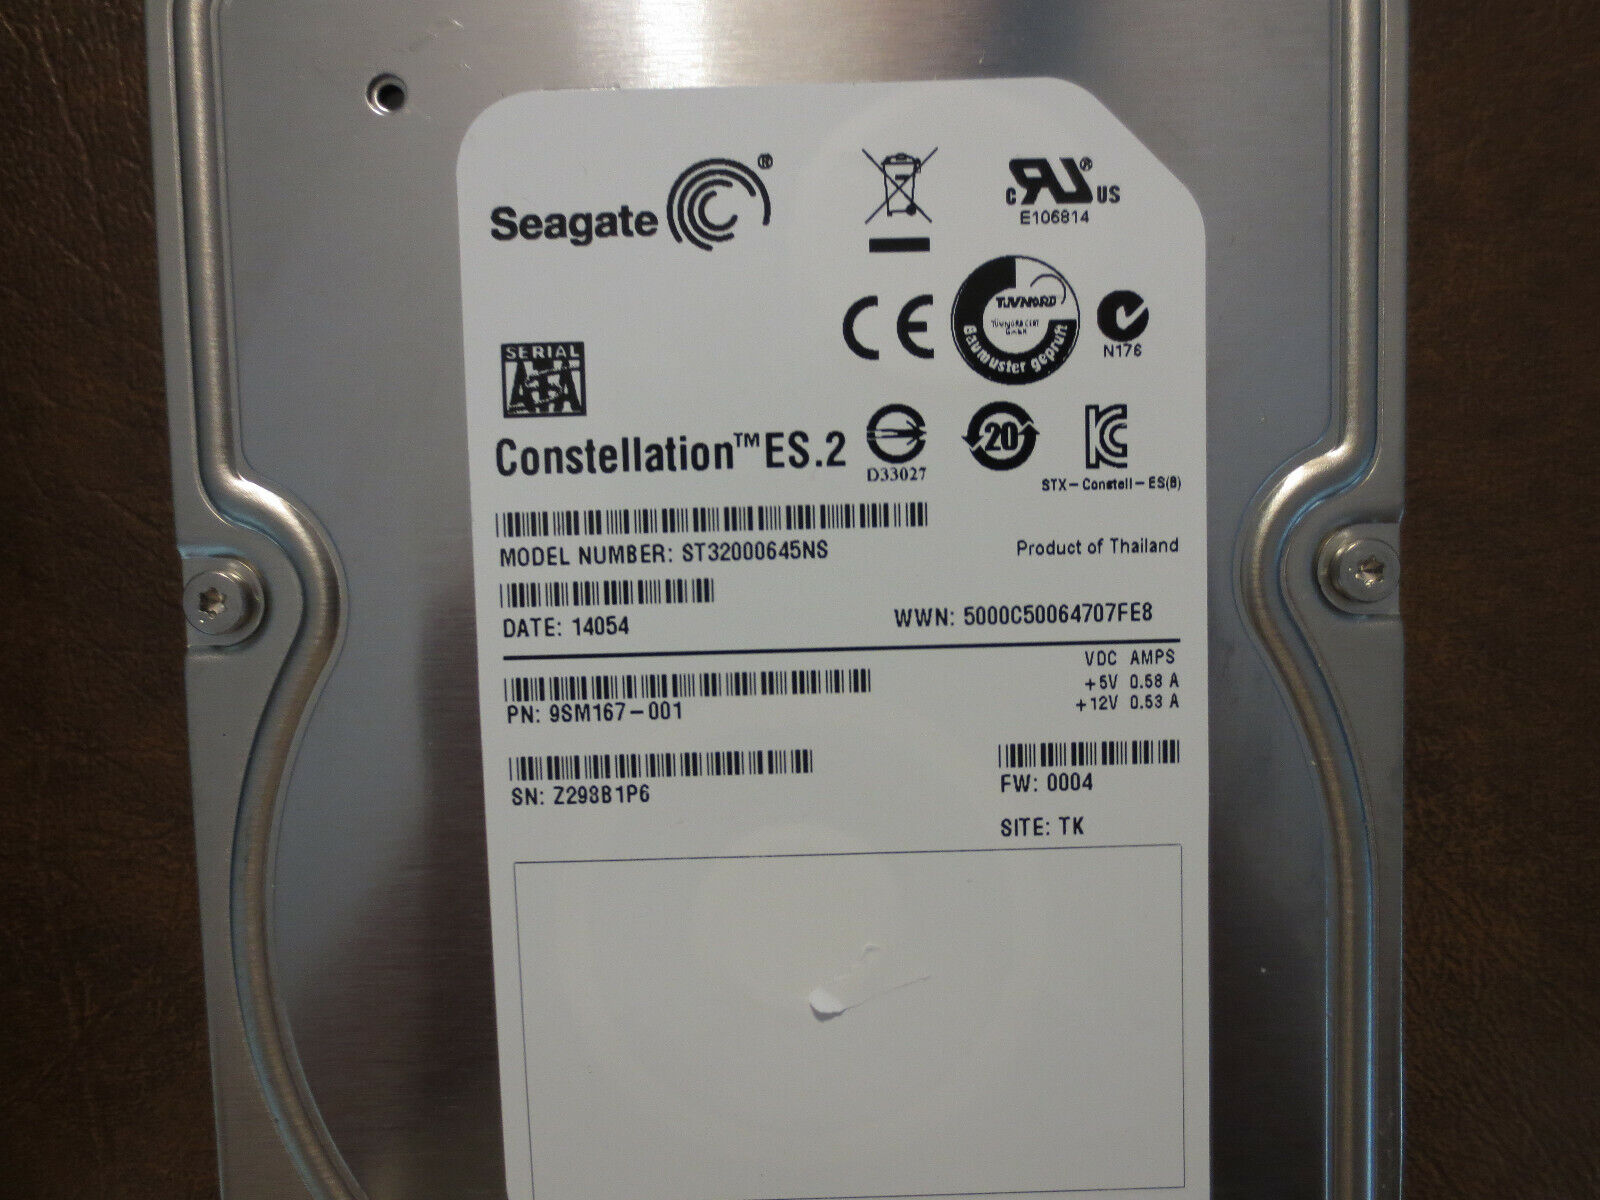 Seagate ST32000645NS 9SM167-001 FW:0004 TK 2.0TB 3.5